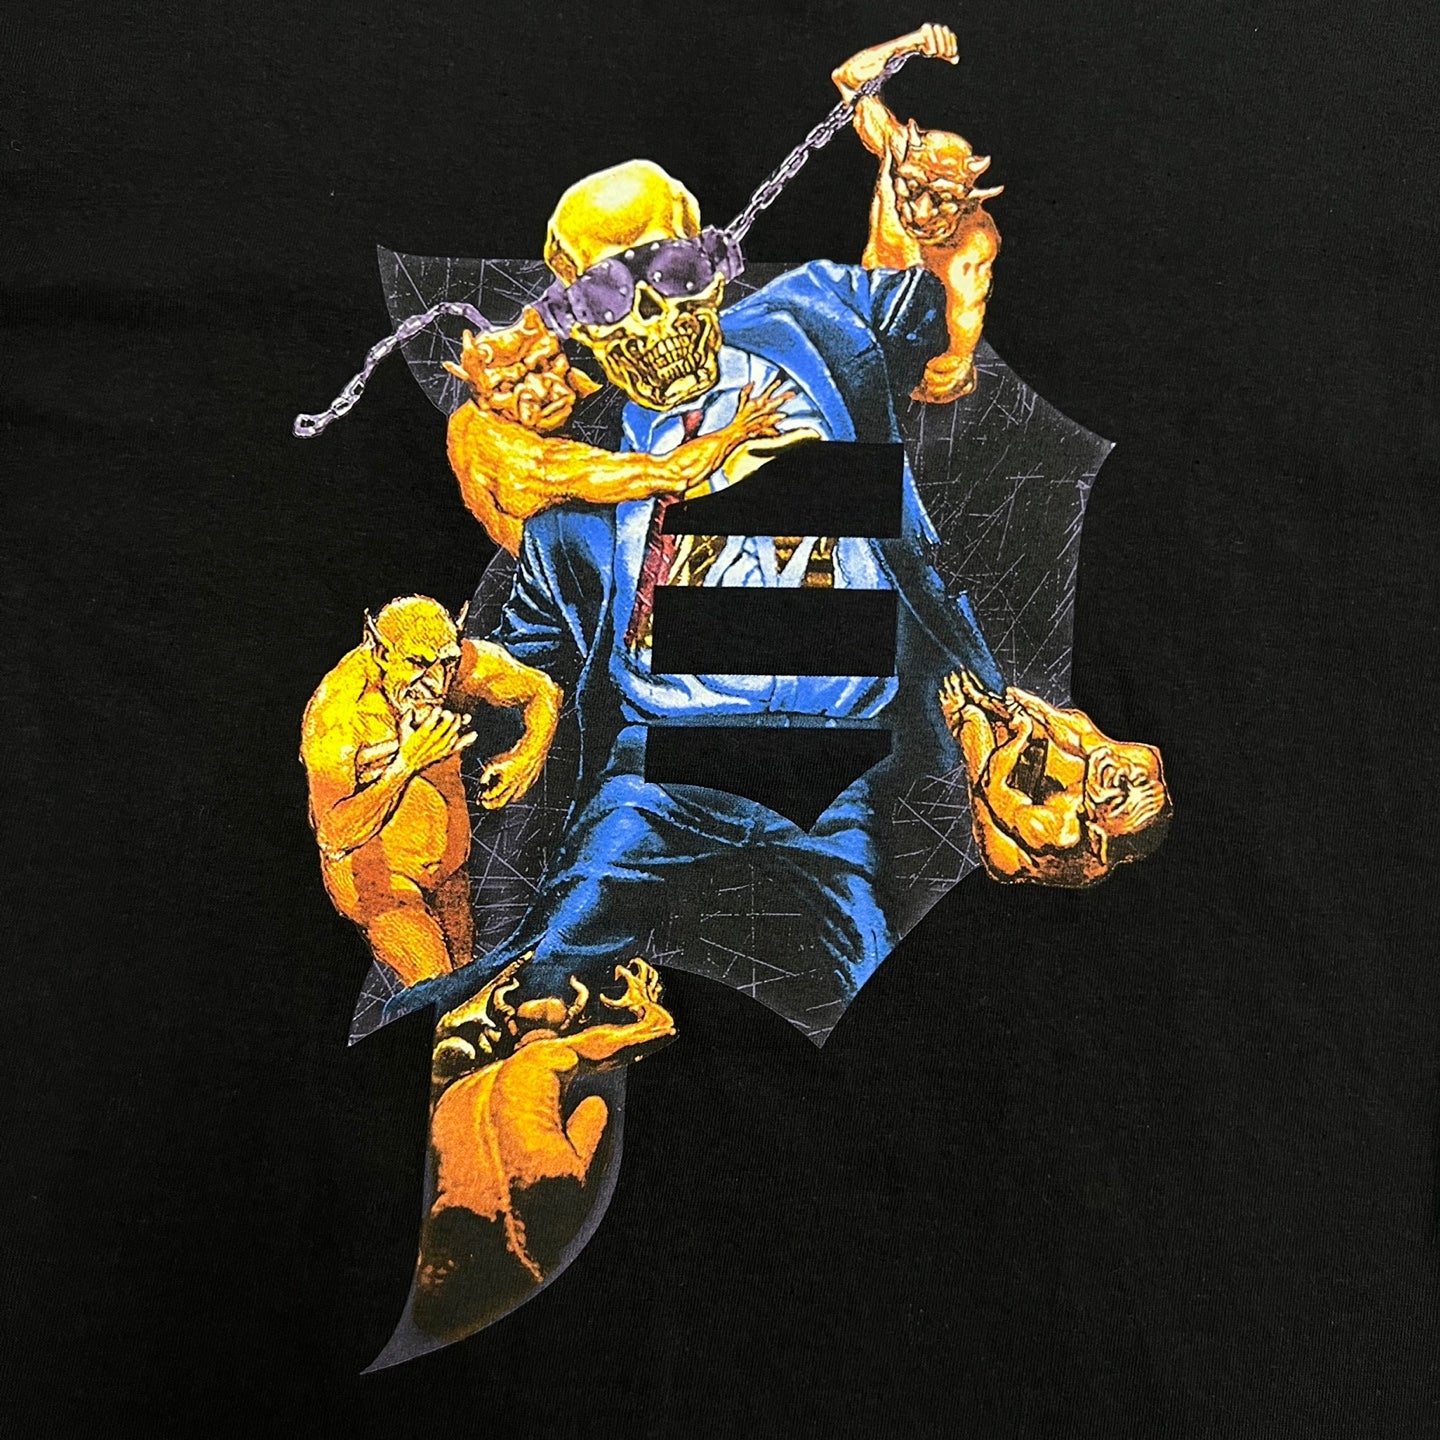 PRIMITIVE x Megadeath Dirty P Chains T-Shirt - BLACK